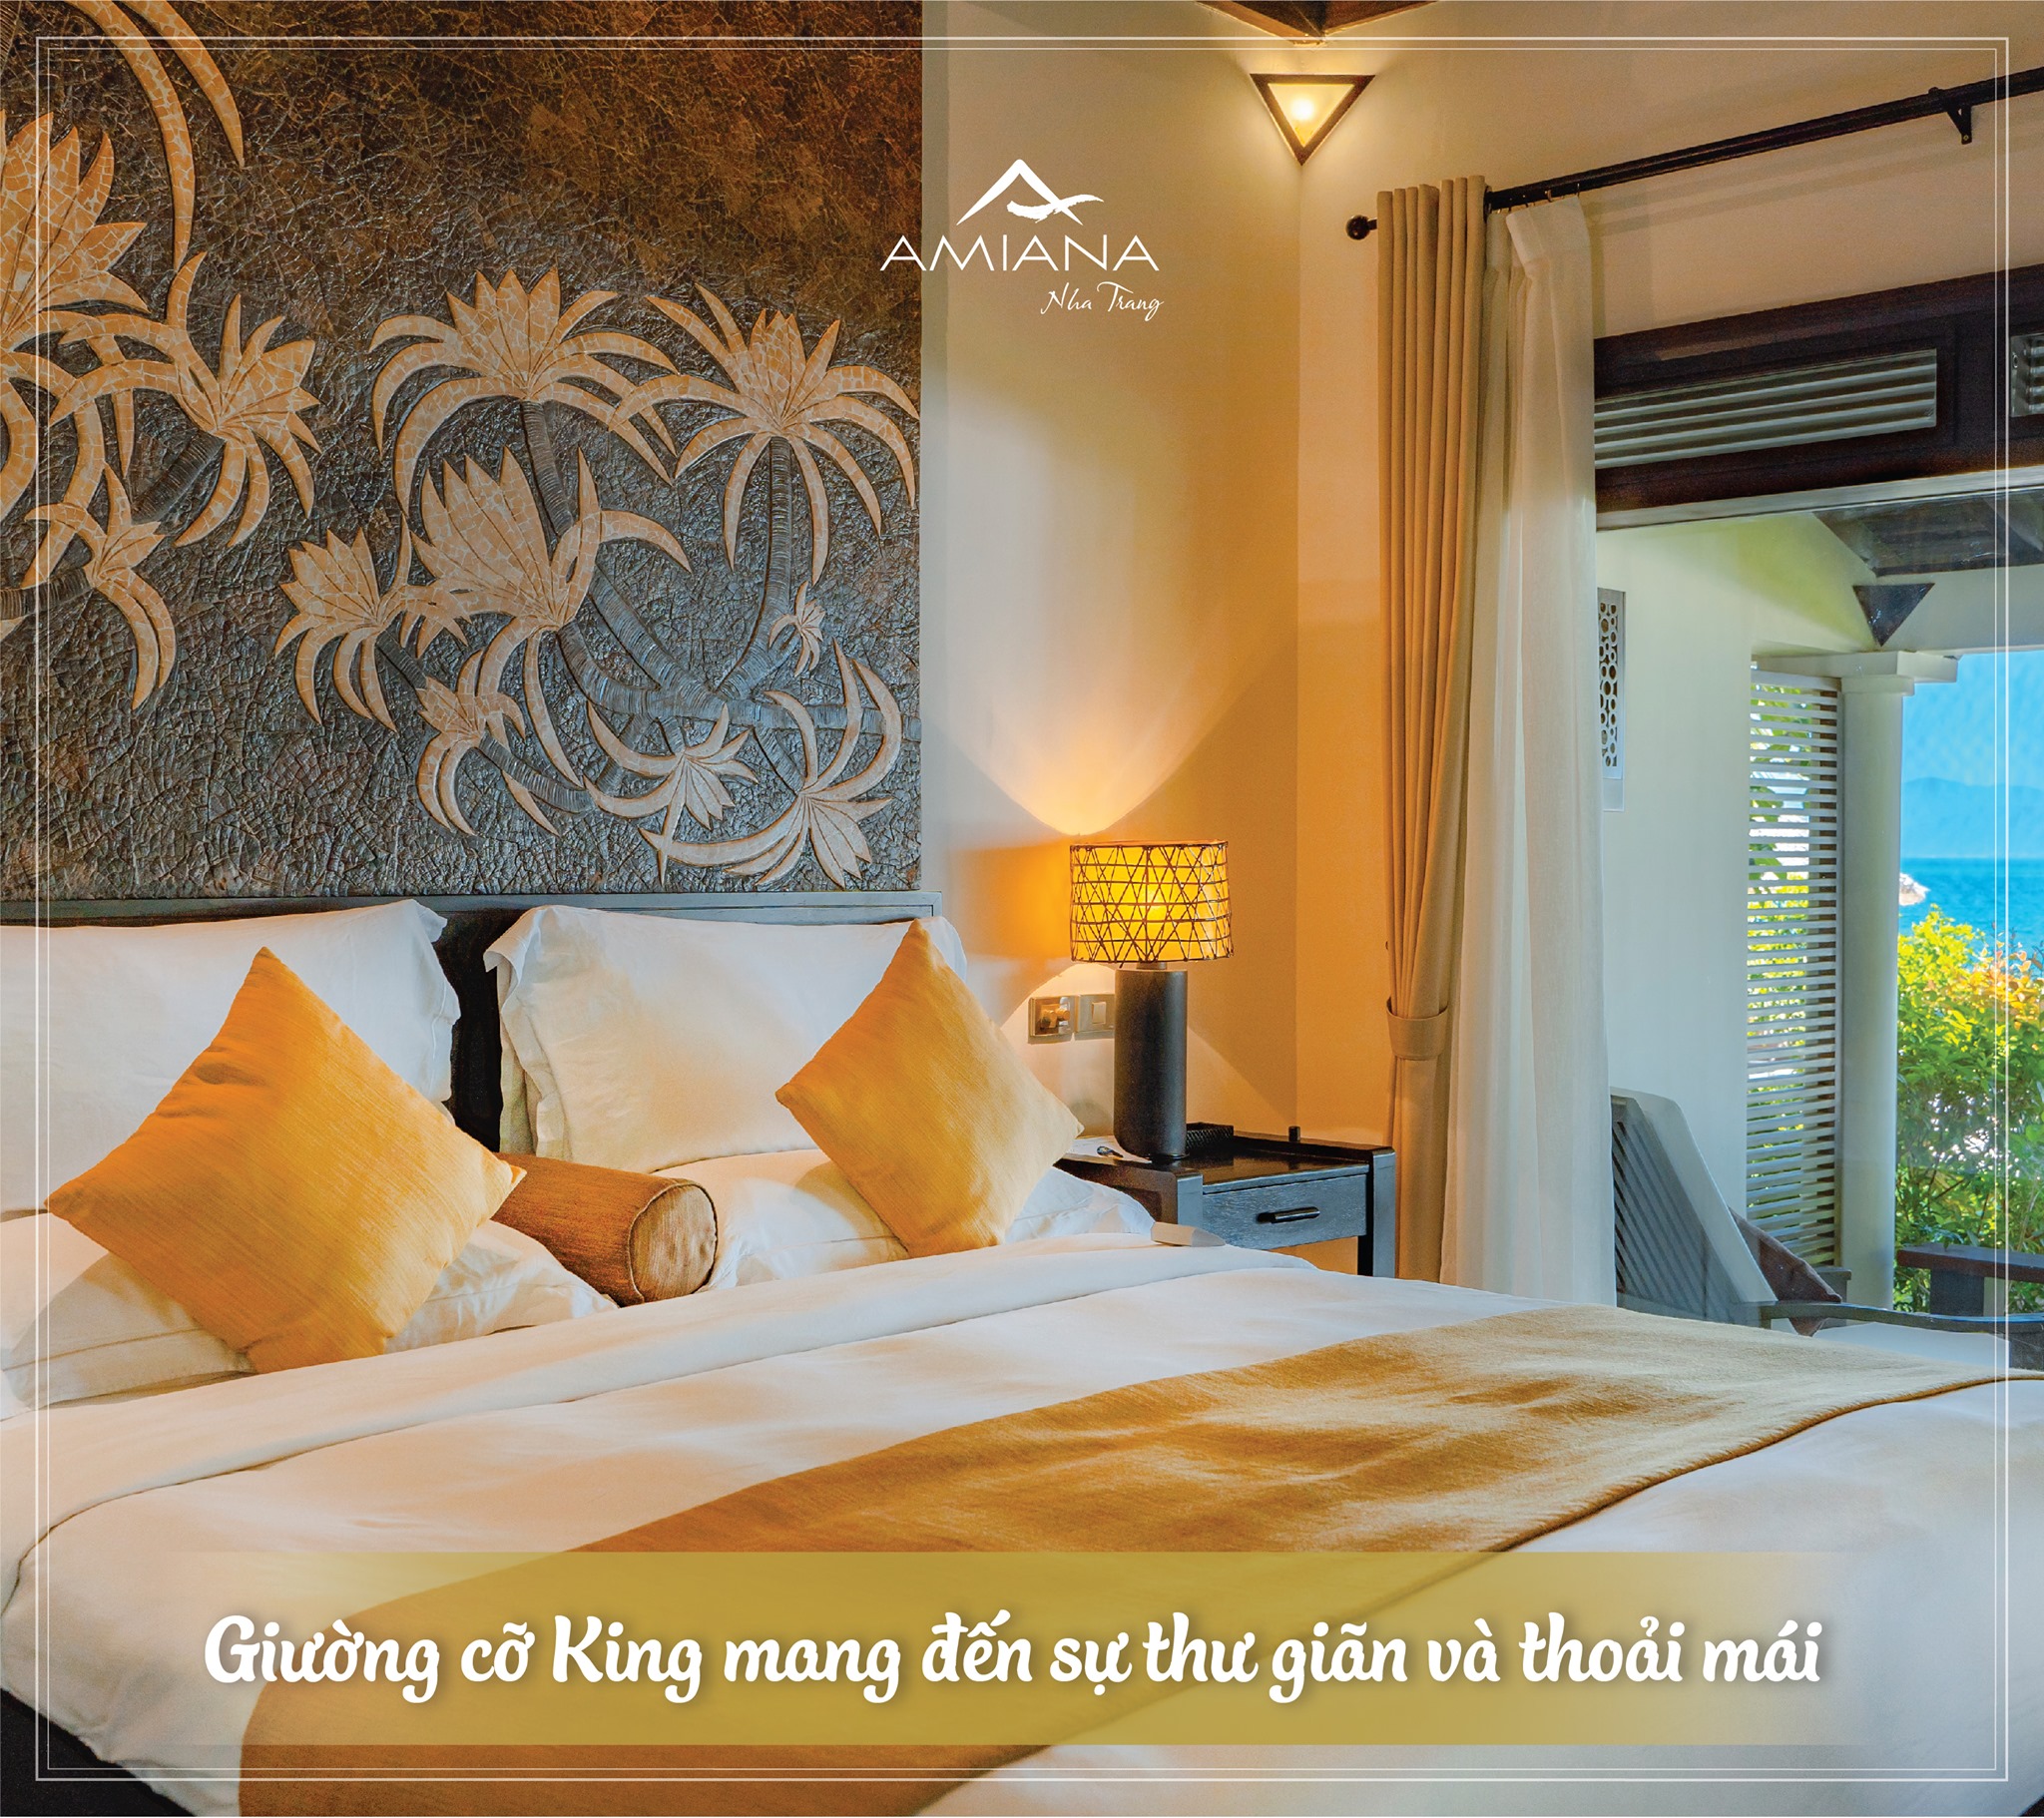 Combo 3N2Đ Amiana Resort Nha Trang + Vé Máy Bay Khứ Hồi